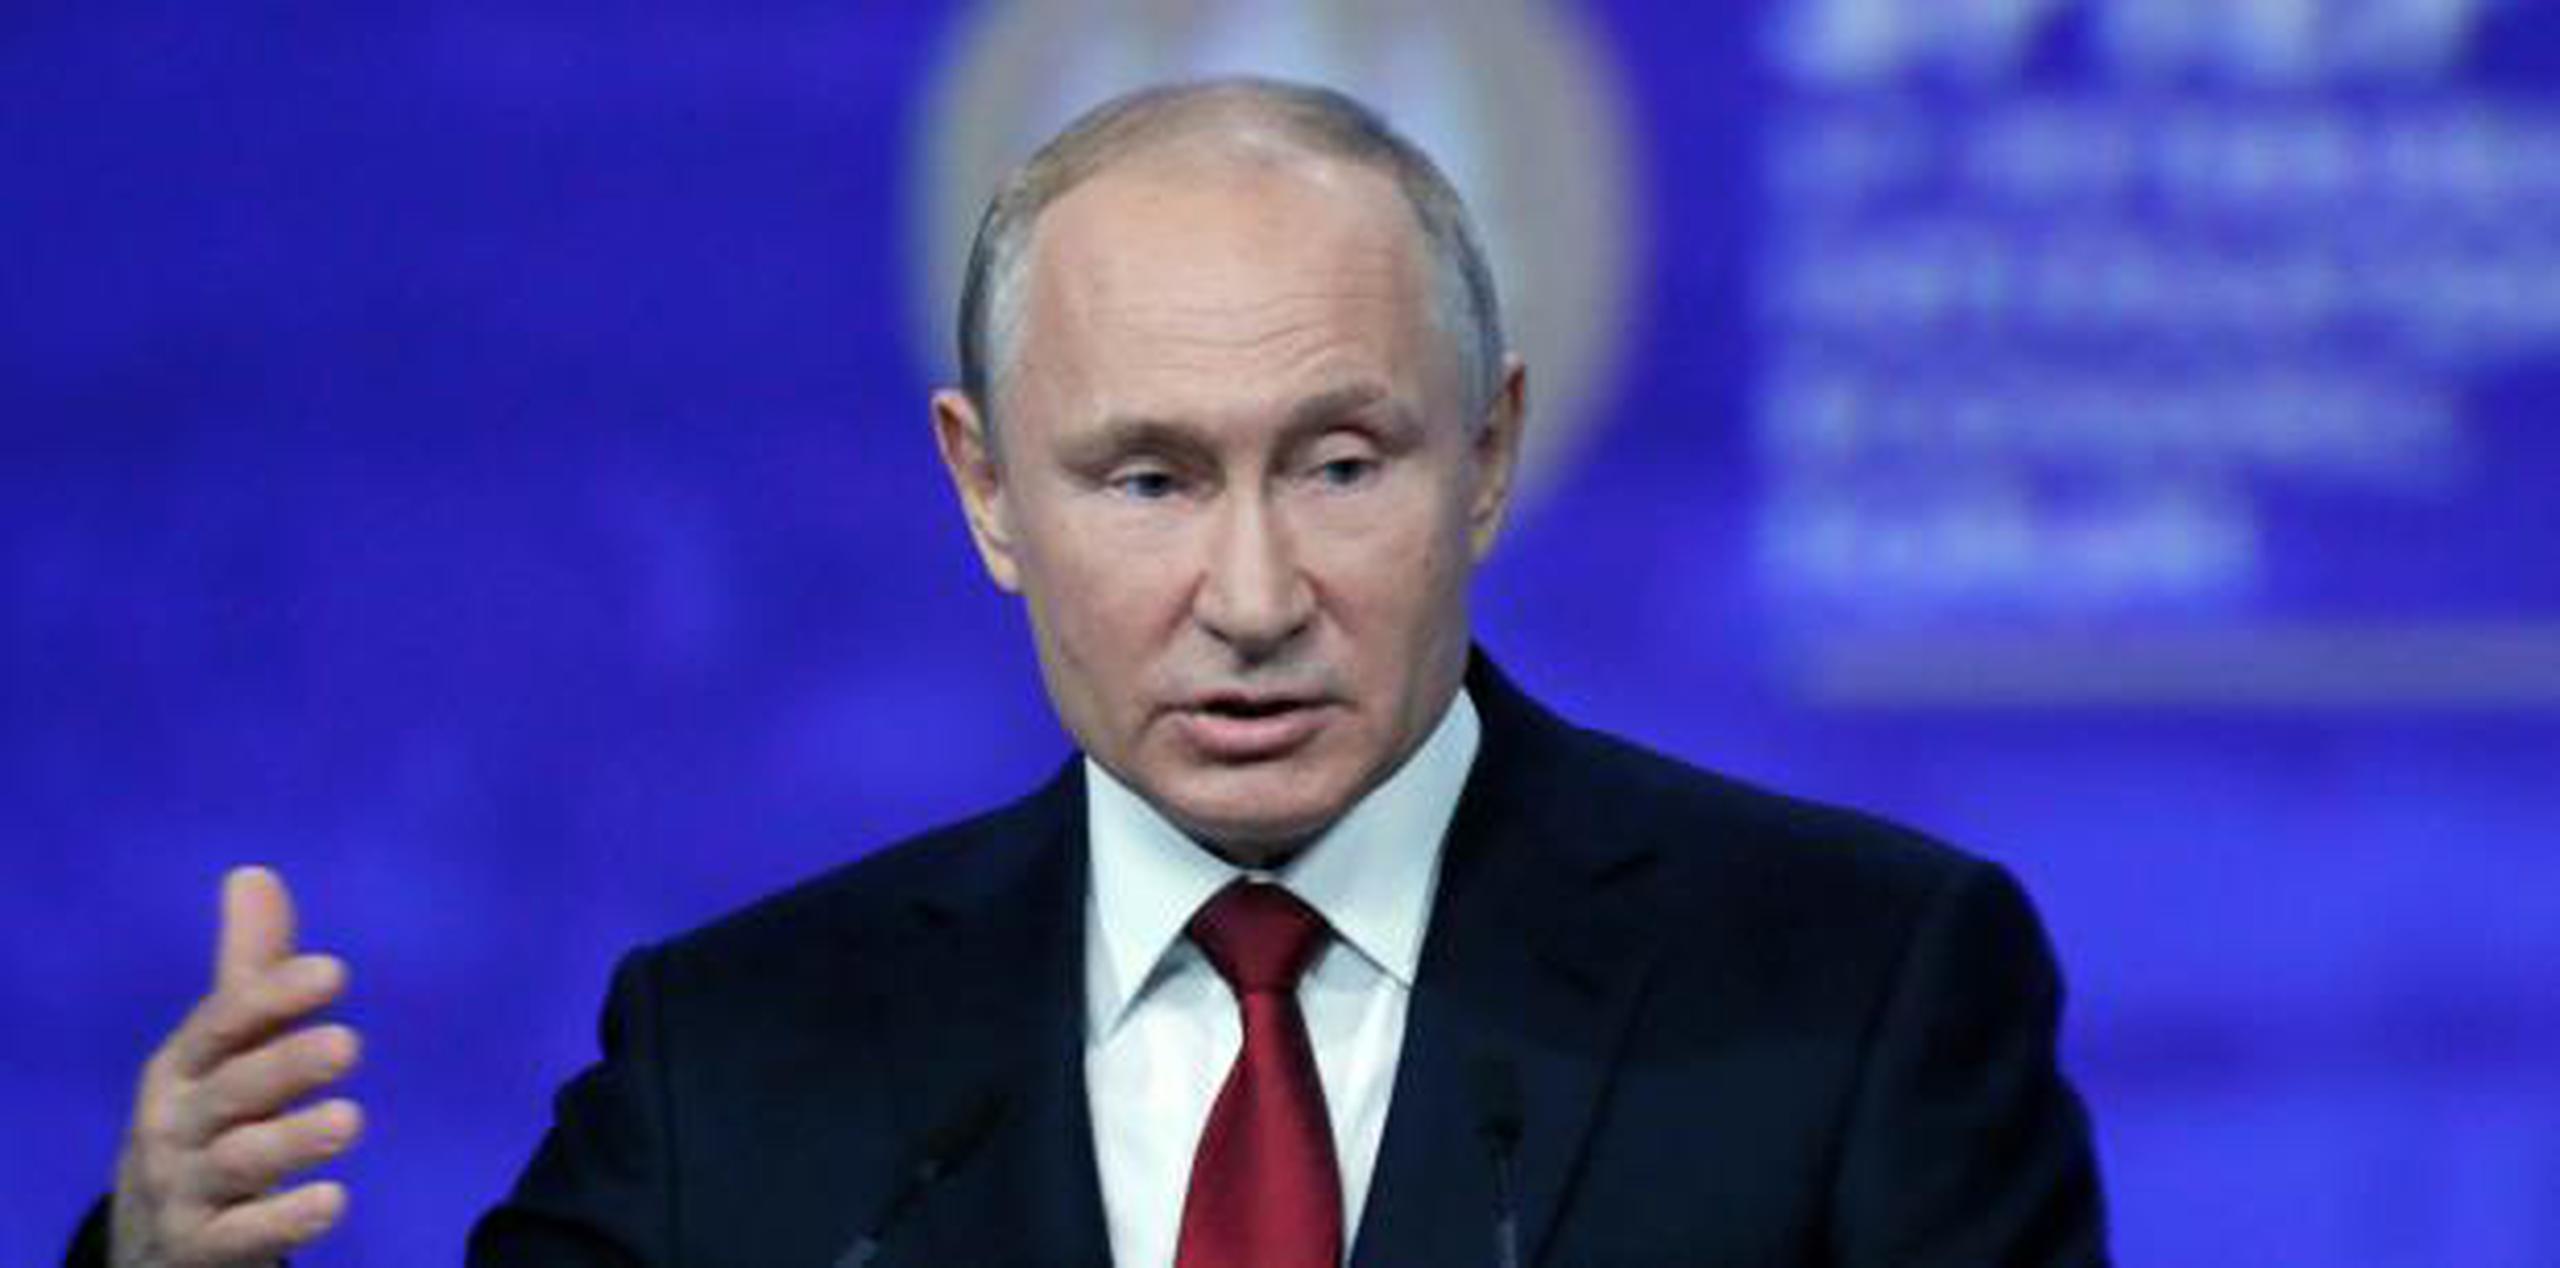 Según Putin, se cree que  "Trump pretende reconstruir las relaciones entre EEUU y Rusia" y reanudar "los contactos para resolver los temas de interés mutuo". (EFE)